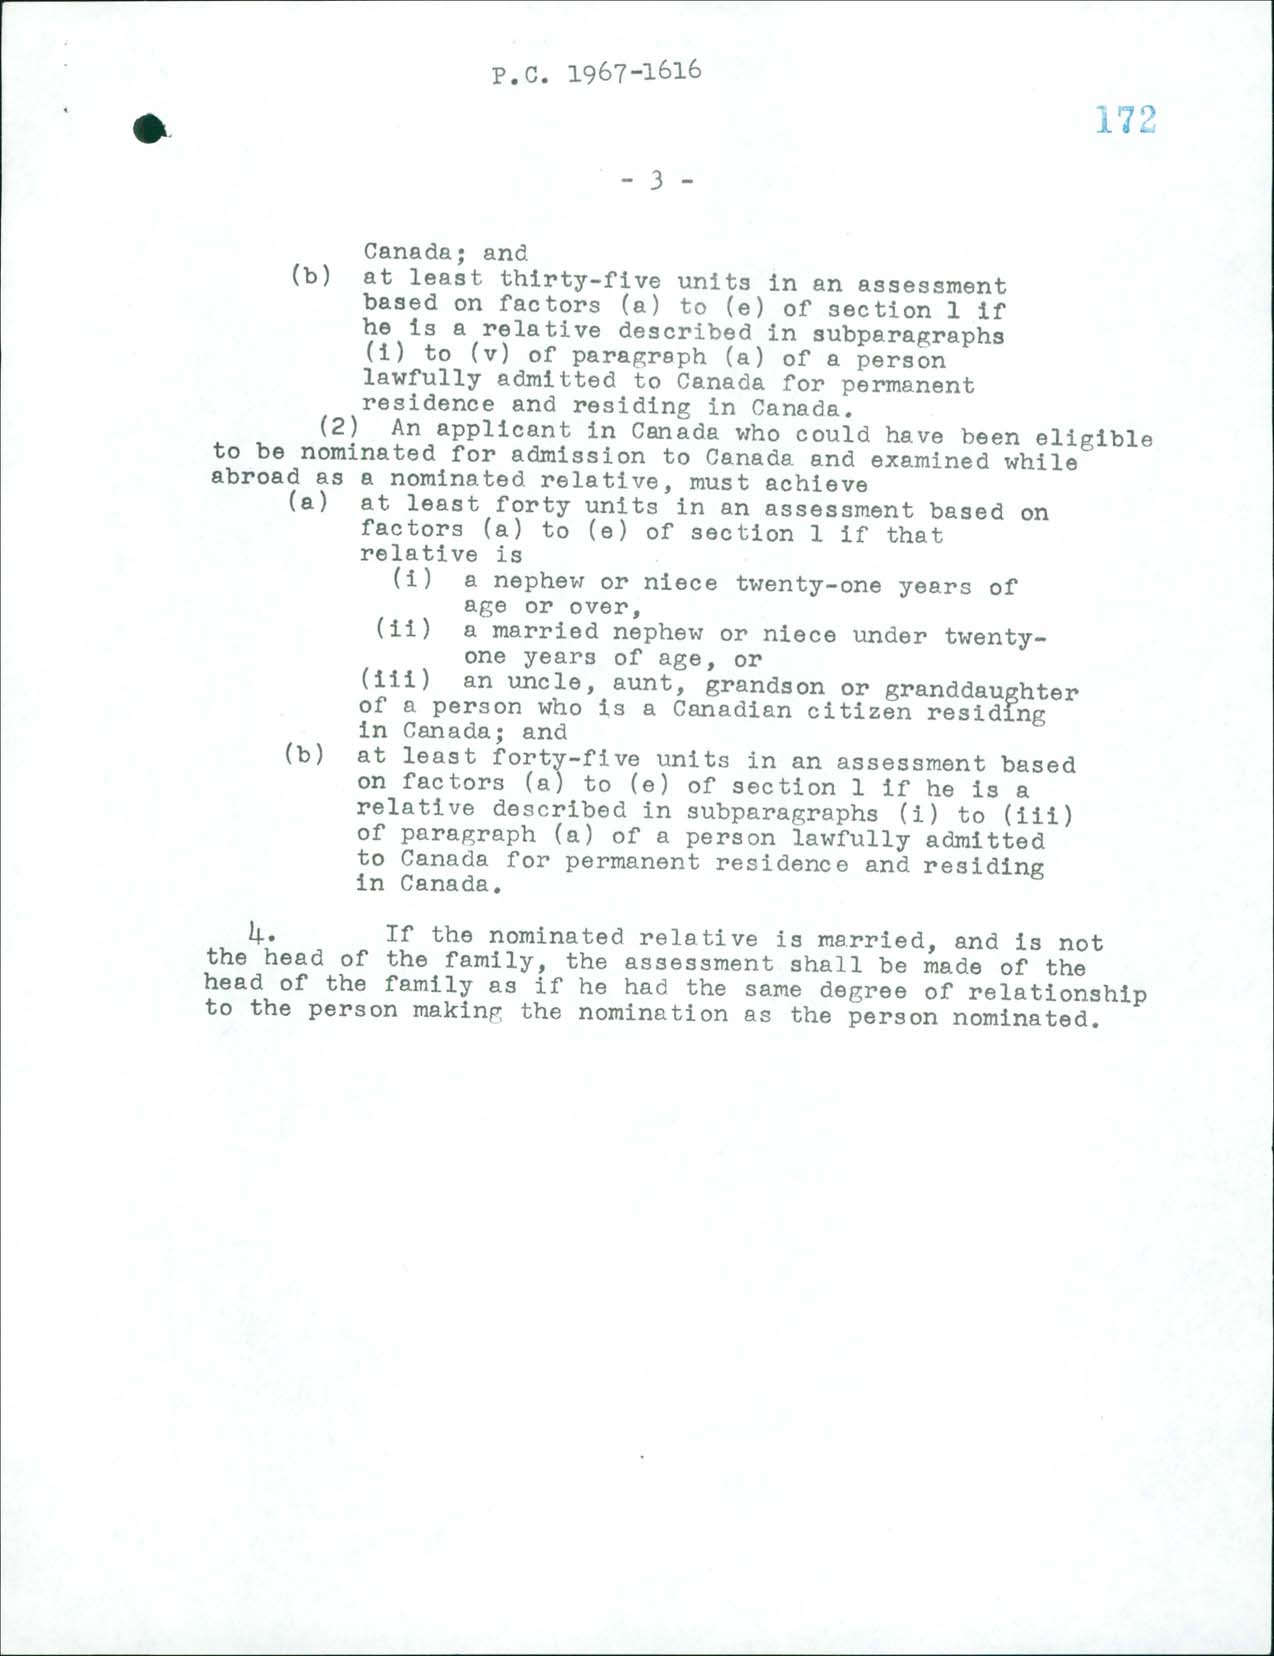 Règlement sur l’immigration, Décret du Conseil CP 1967-1616, 1967